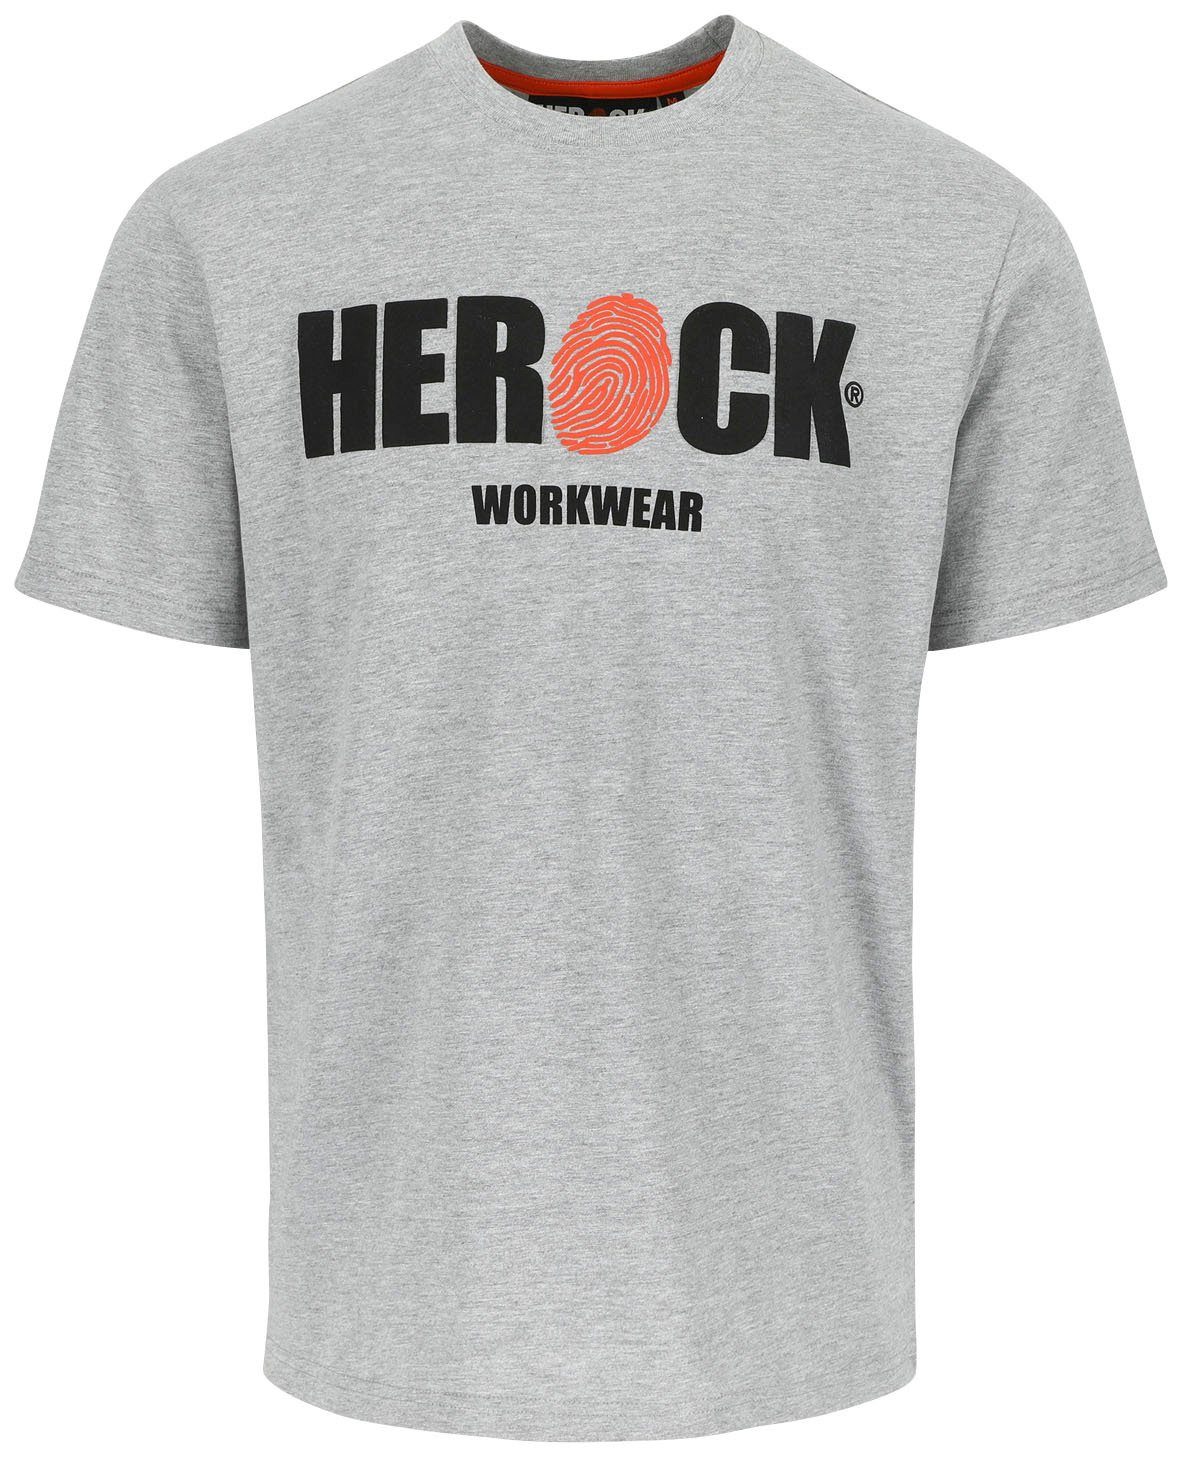 Herock T-Shirt ENI Baumwolle, Rundhals, mit Herock®-Aufdruck, angenehmes Tragegefühl grau